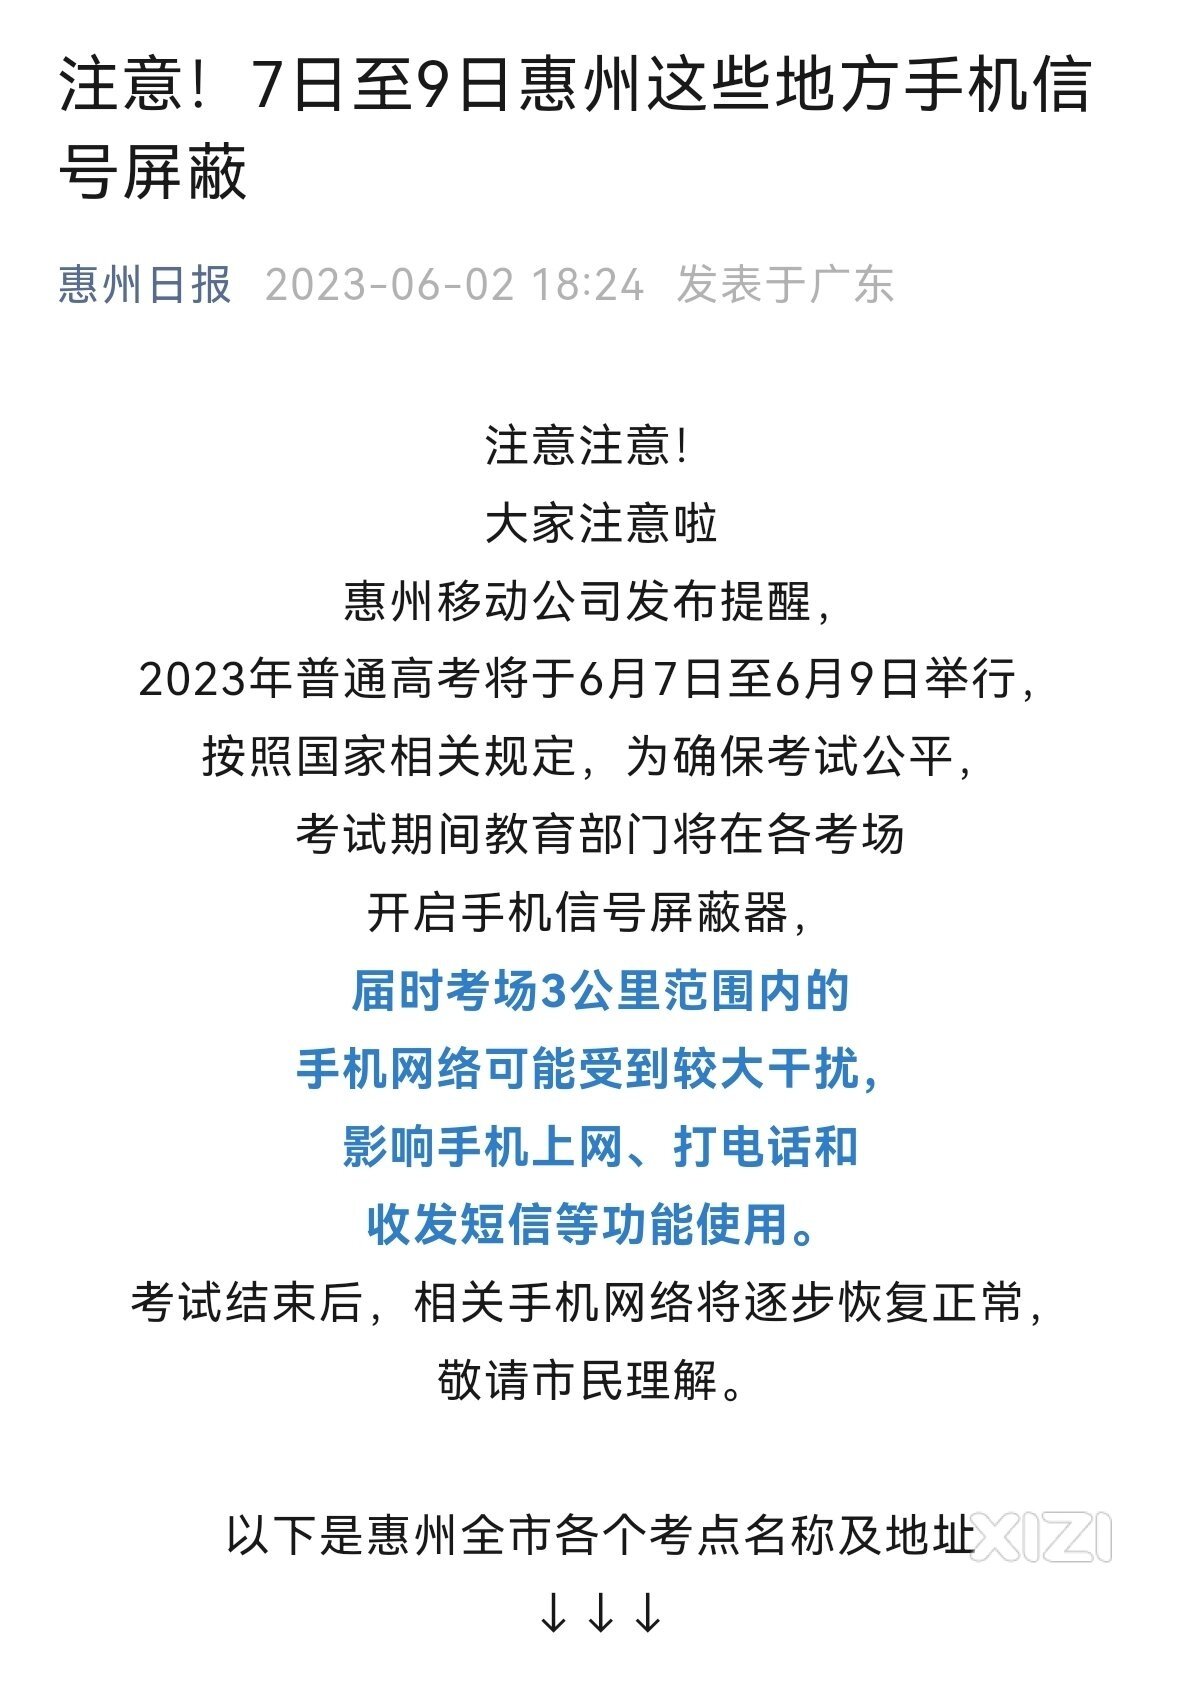 本月7日至9日惠州高考考场3公里范围内手机信号屏蔽